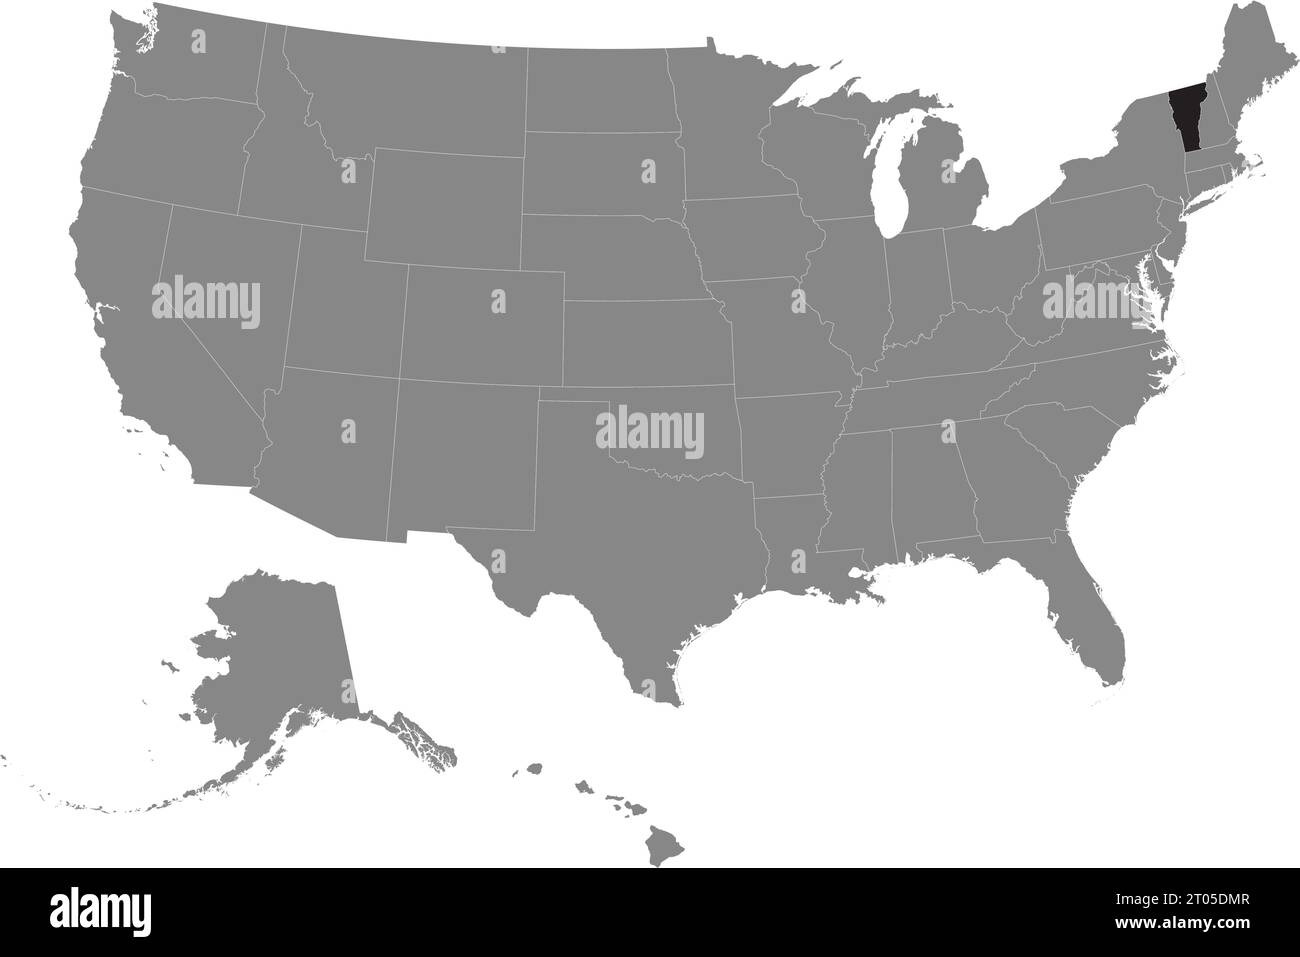 Schwarze CMYK-Bundeskarte von VERMONT in detaillierter grauer, leerer politischer Karte der Vereinigten Staaten von Amerika auf transparentem Hintergrund Stock Vektor